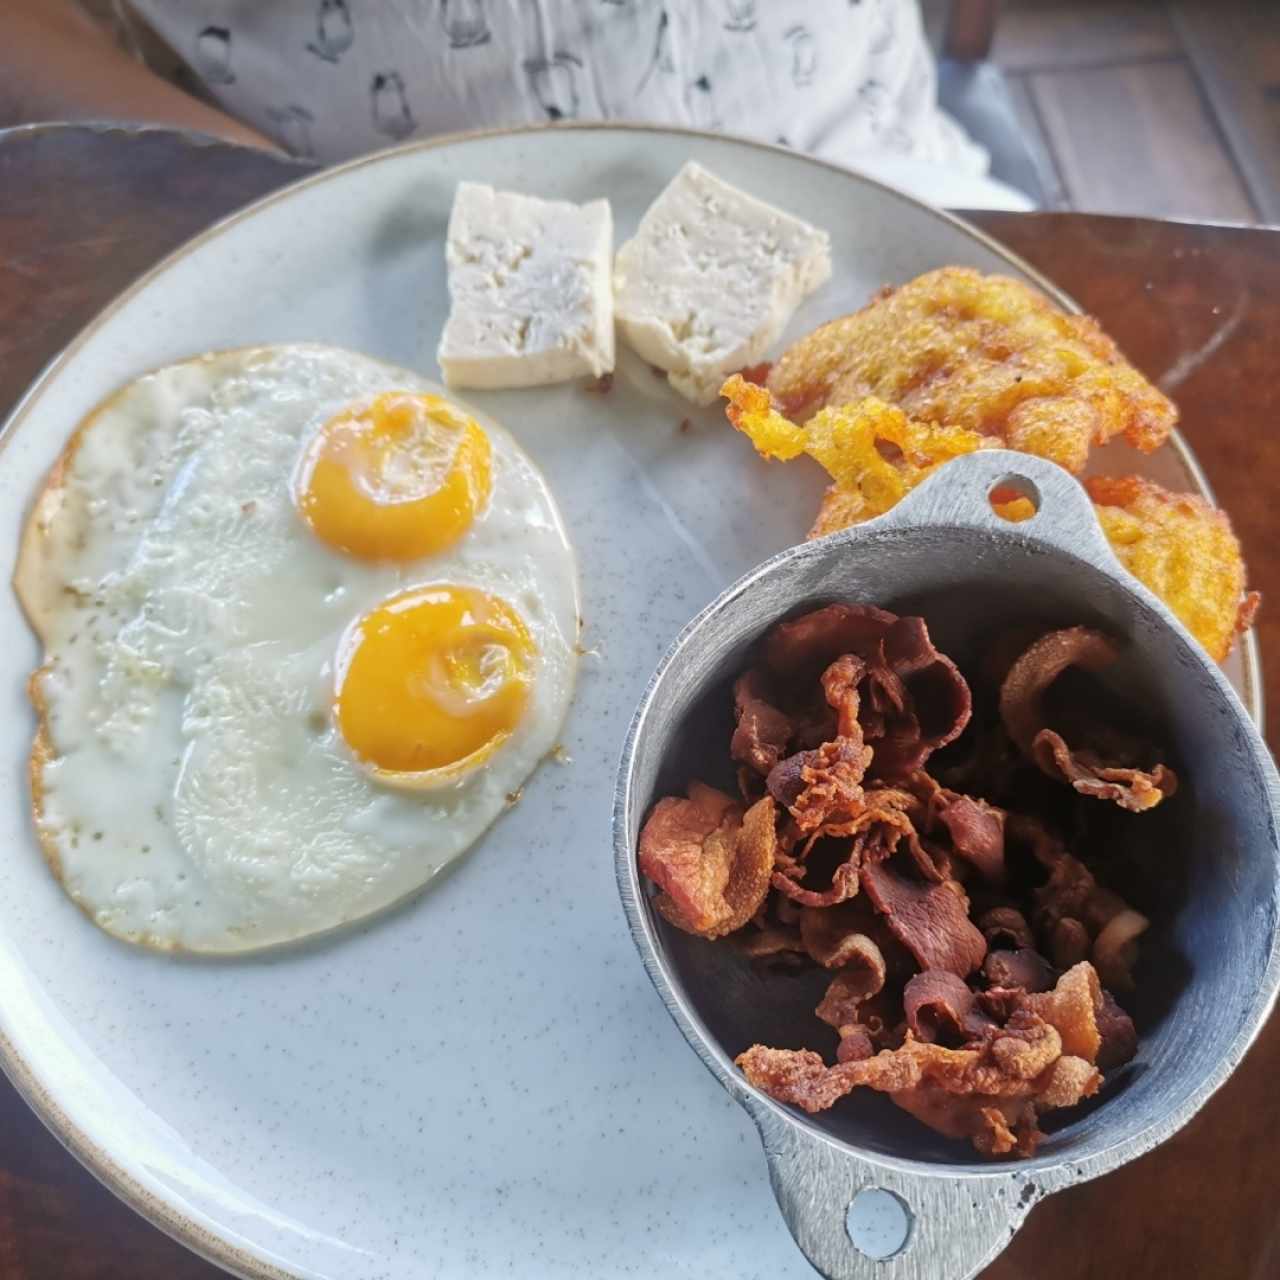 Desayuno torrejitas de maiz, bacon y huevo frito